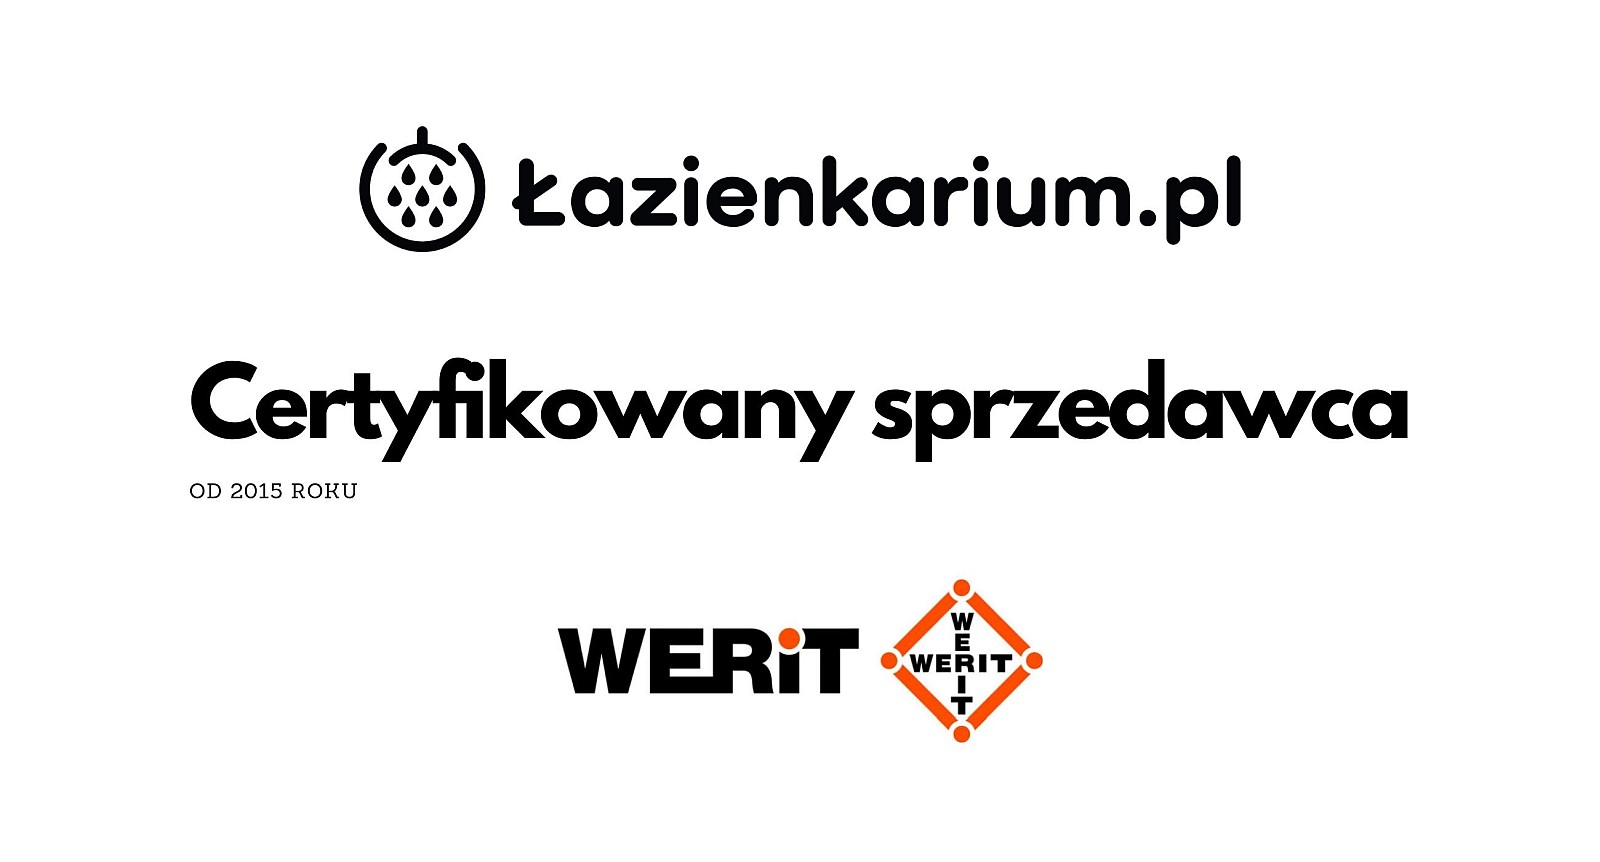 Werit Jomo Sklep Tech Polska Jakość. Certyfikowany Dystrybutor - lazienkarium.pl